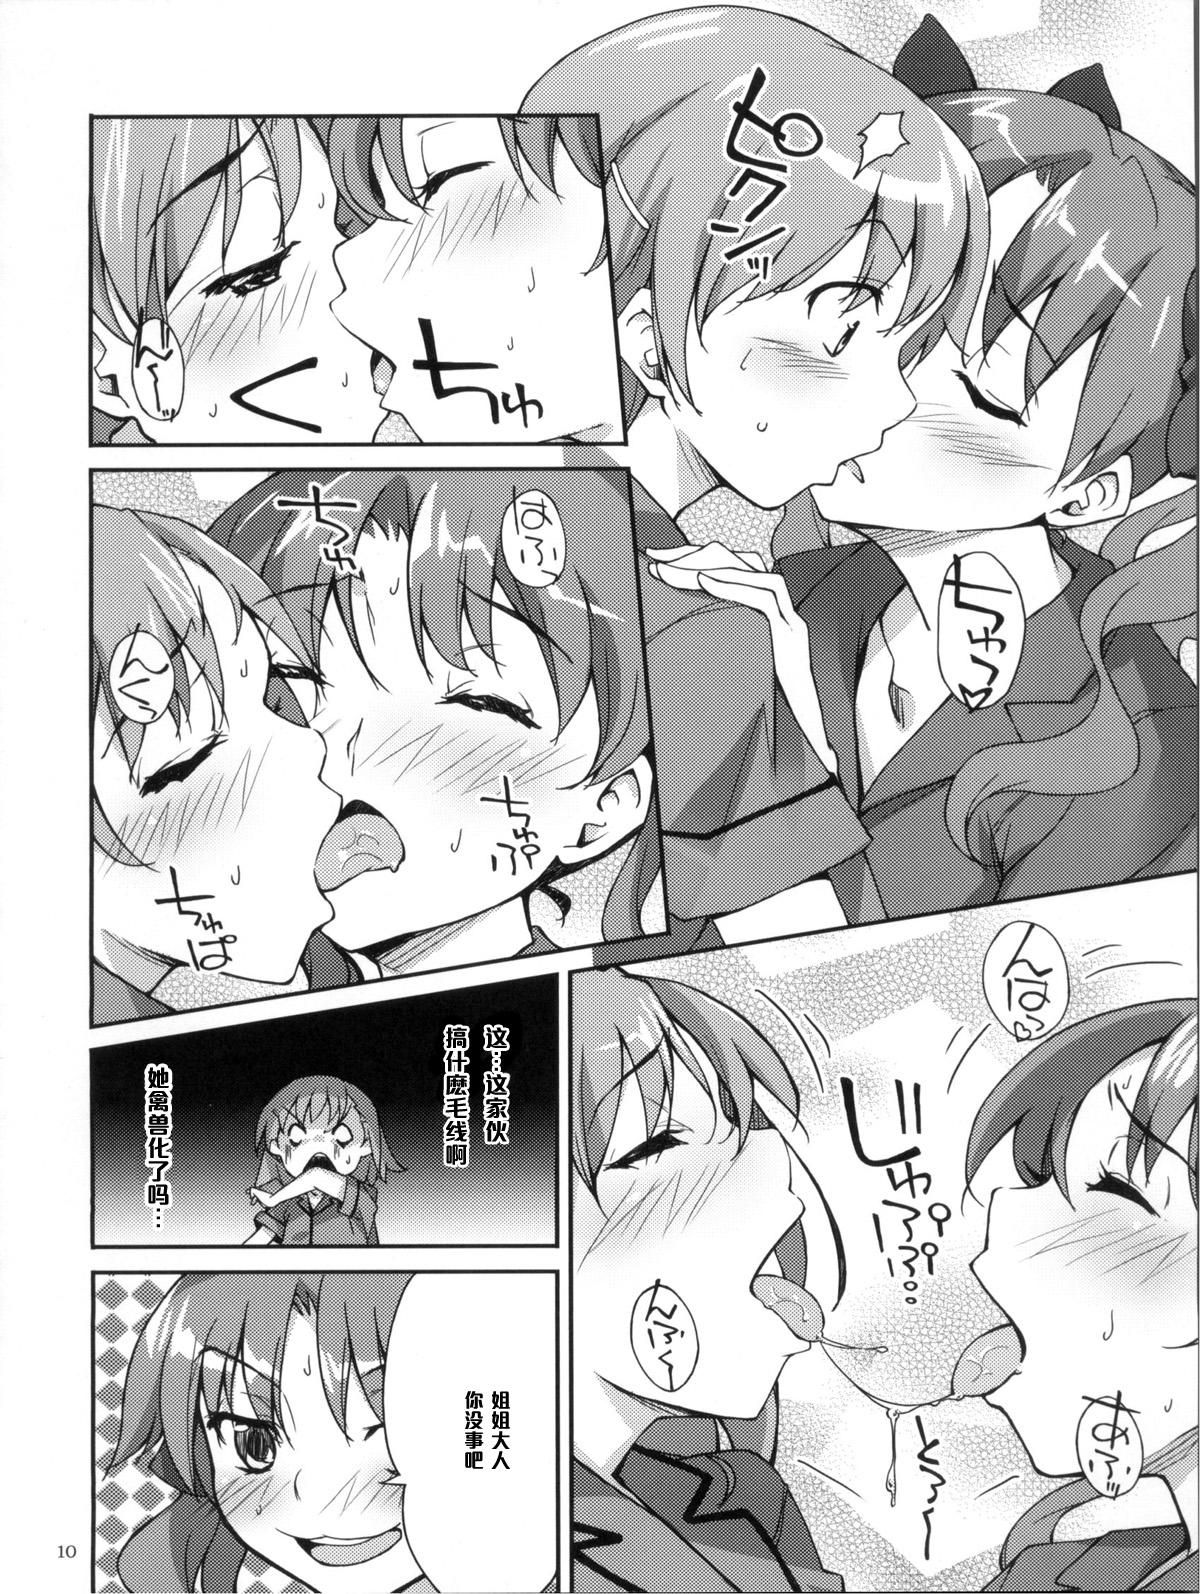 Dicks Desu no!! 2 - Toaru kagaku no railgun Gay Medical - Page 10